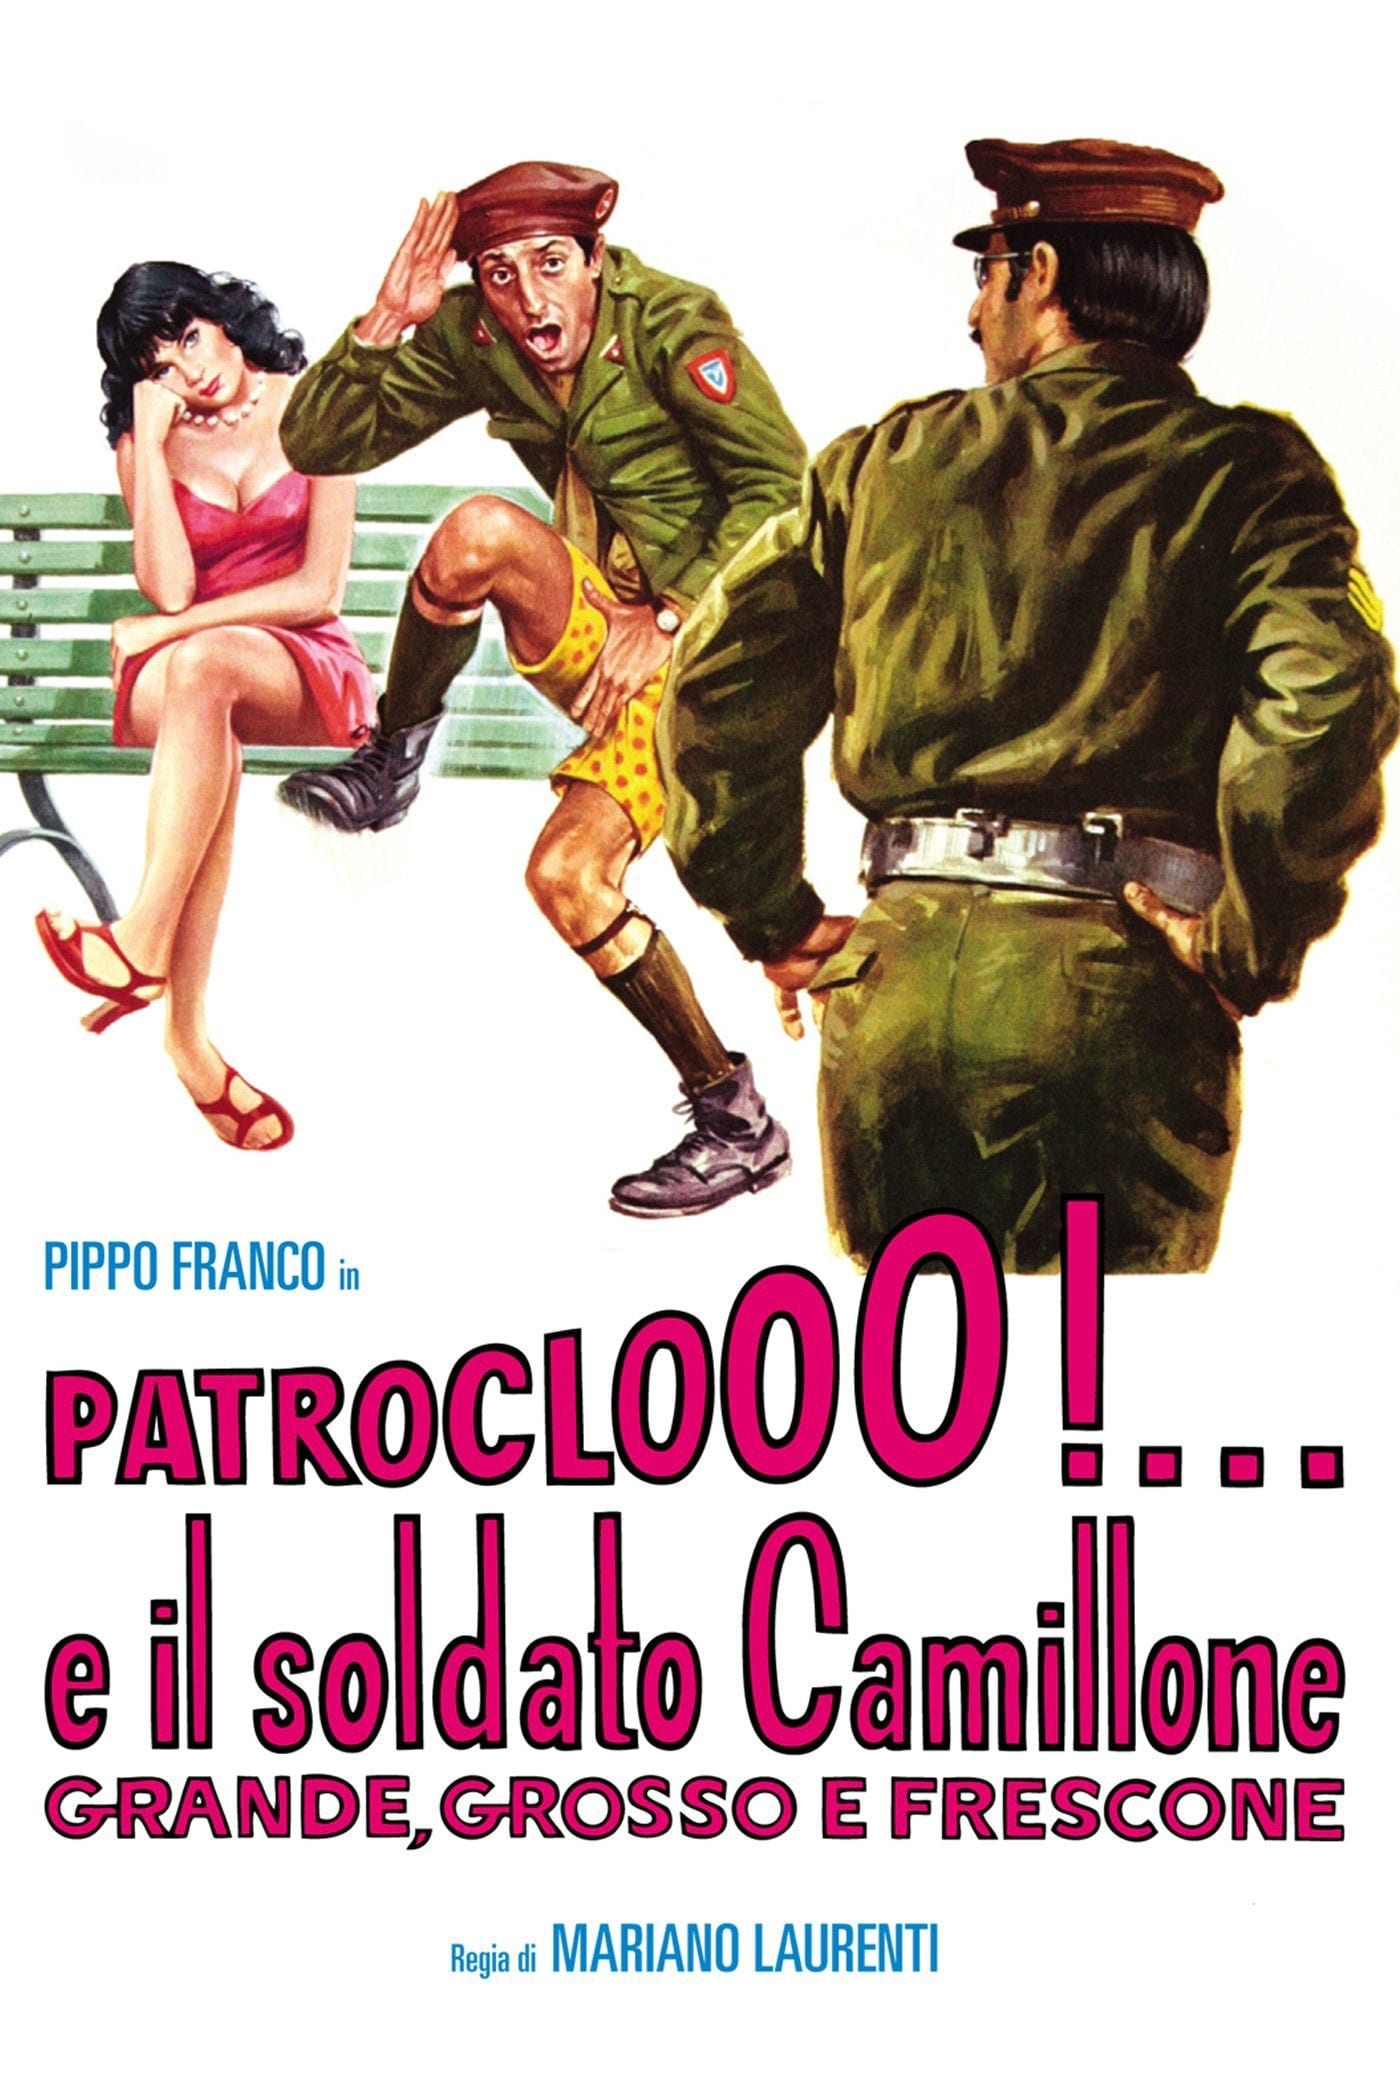 Patroclooo!... e il soldato Camillone, grande grosso e frescone (1973)